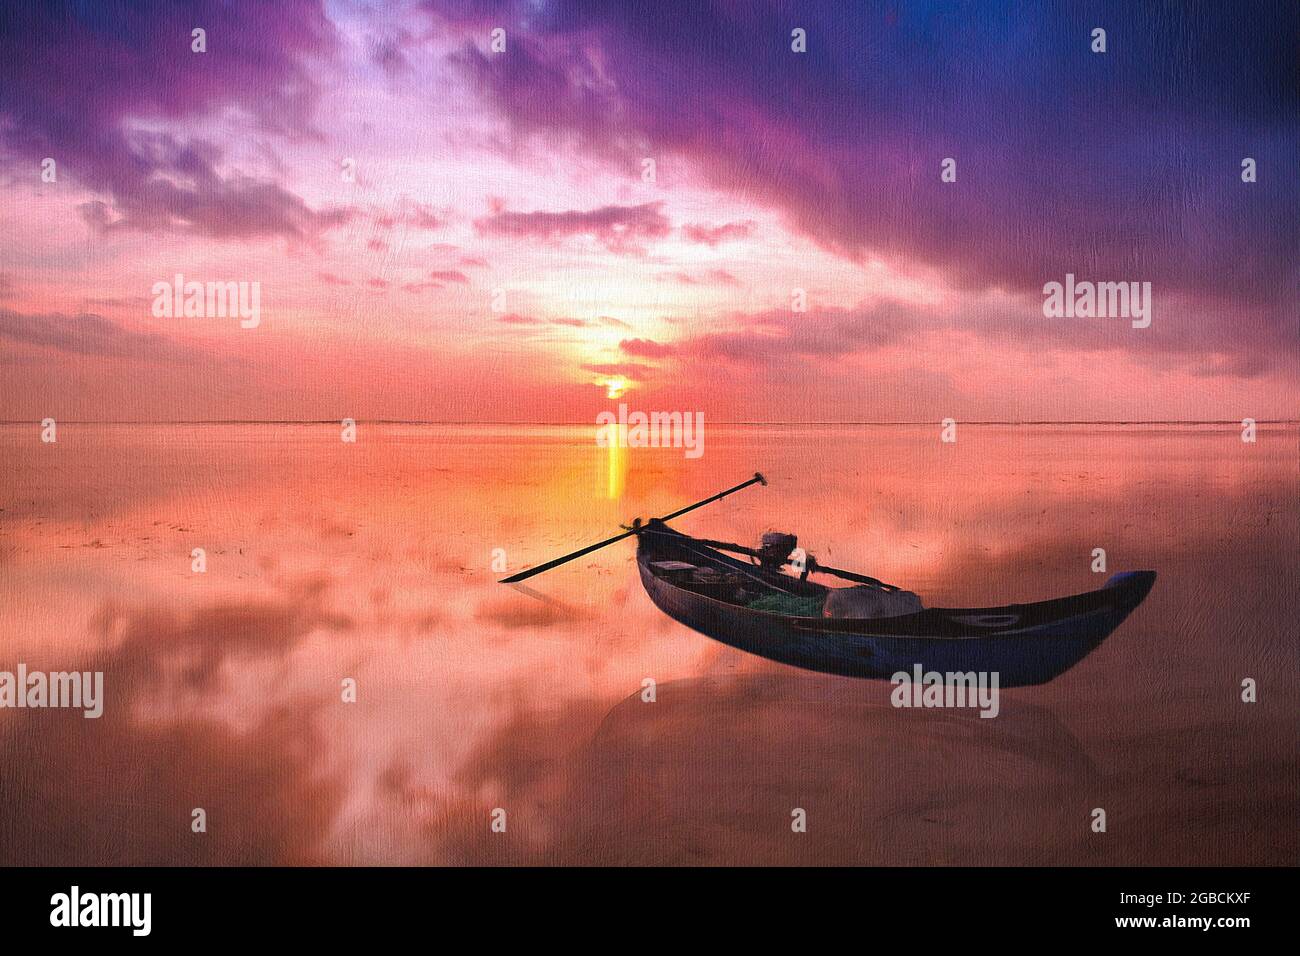 Petit bateau de pêche asiatique typique situé sur une mer calme contre un coucher de soleil spectaculaire. D'un aspect peint et texturé. Banque D'Images